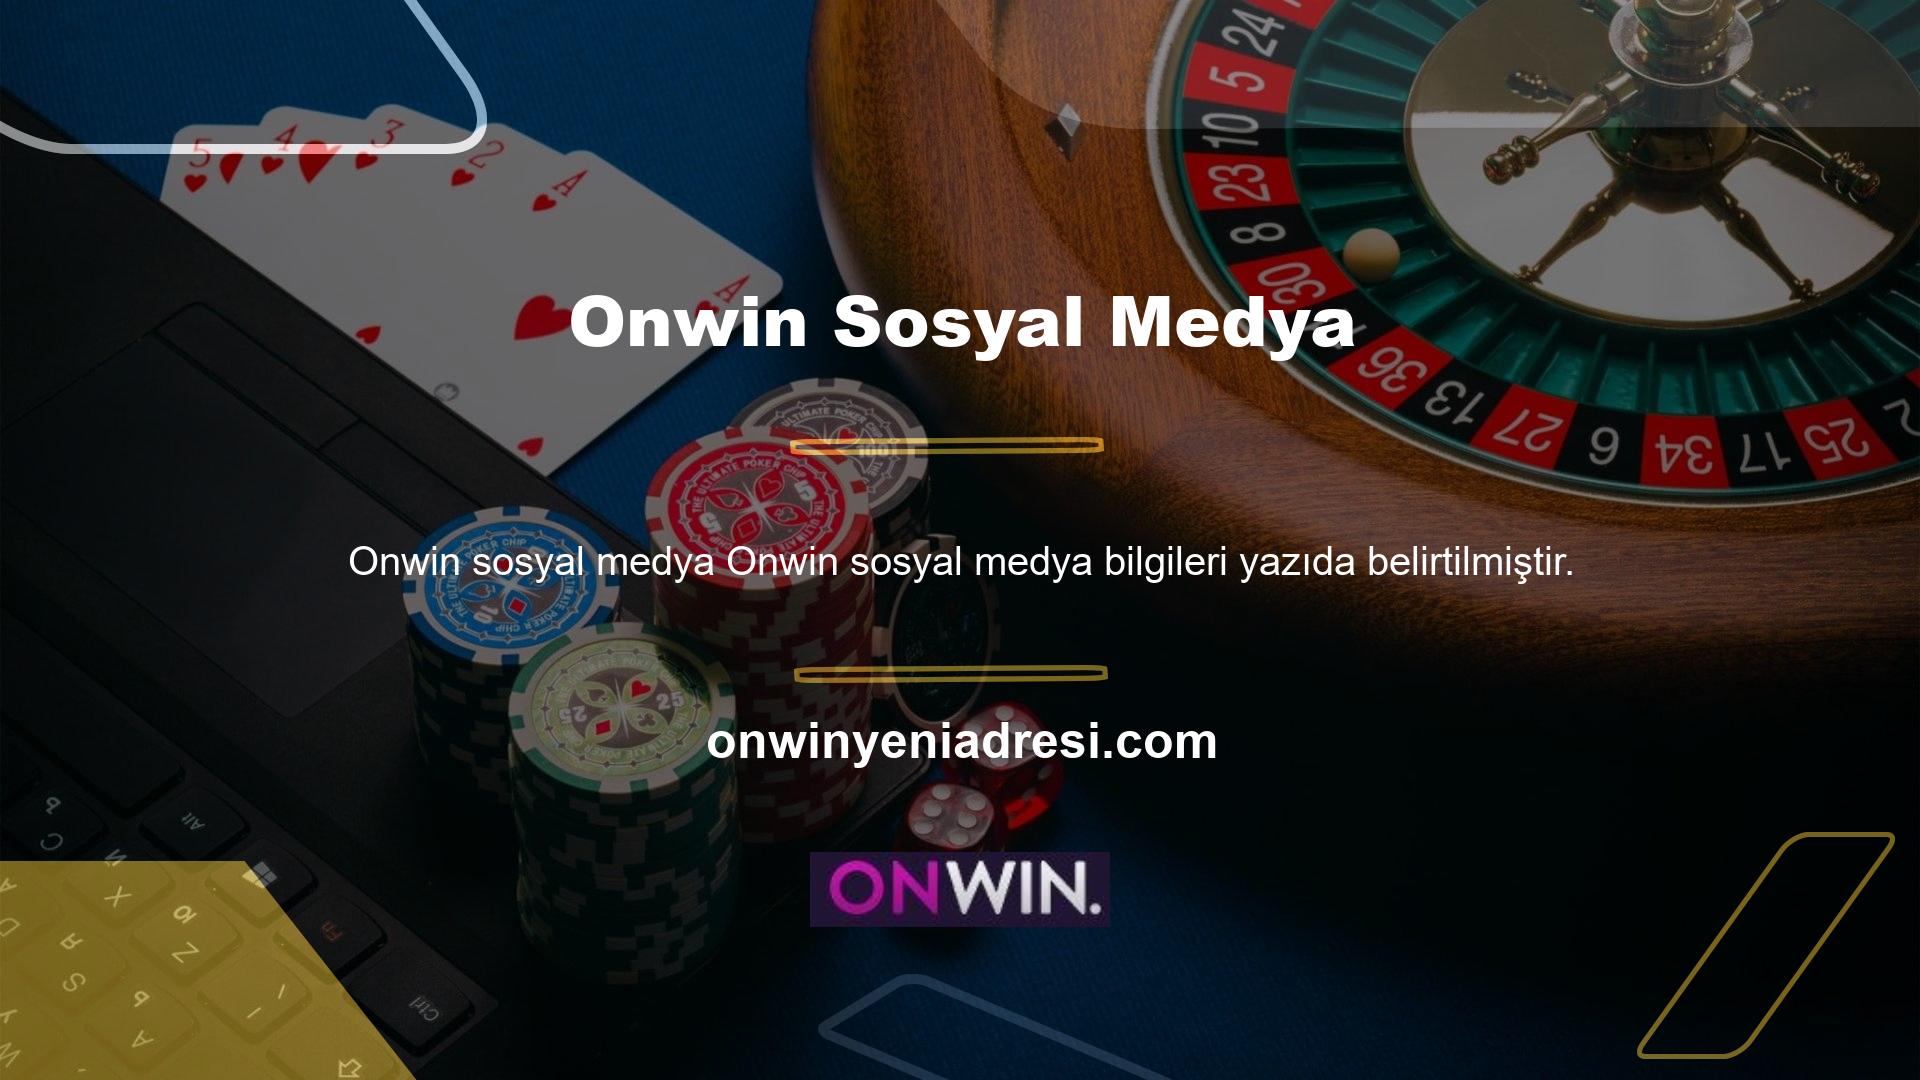 Onwin canlı casino bonus sitesi sosyal medya hesaplarına sahiptir